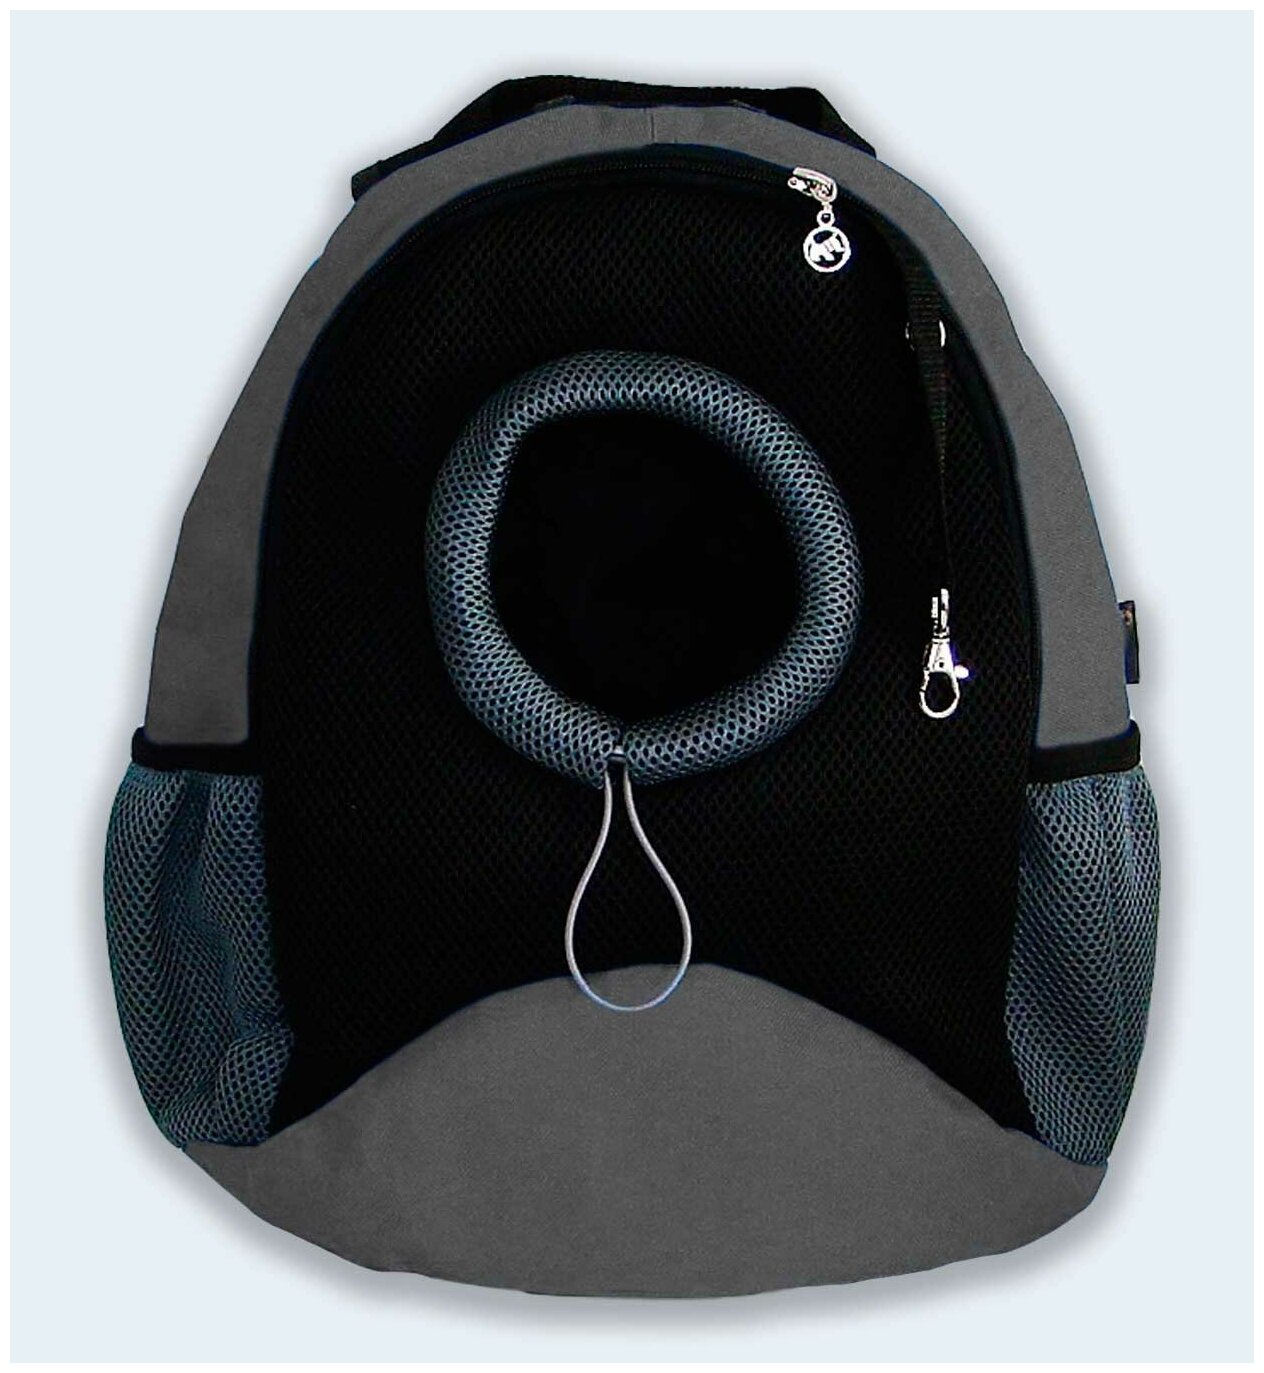 Рюкзак для собак и кошек Melenni Эконом S серый/черная сетка, 30x35x15, см; Вес: 390 гр.